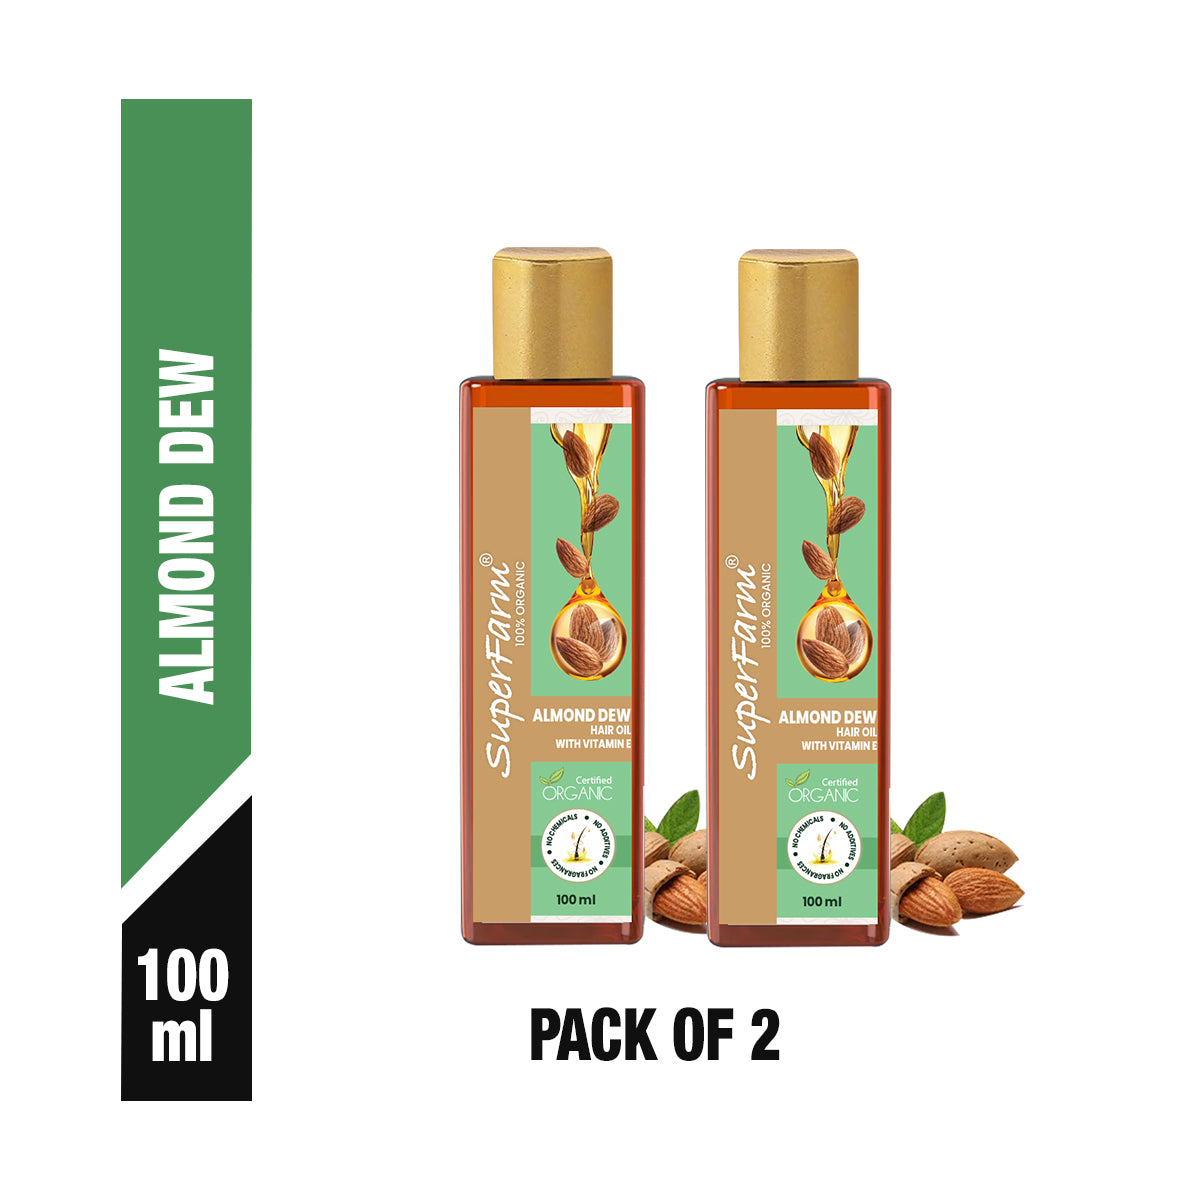 Superfarm Organic Almond Dew Hair Oil With Vitamin E